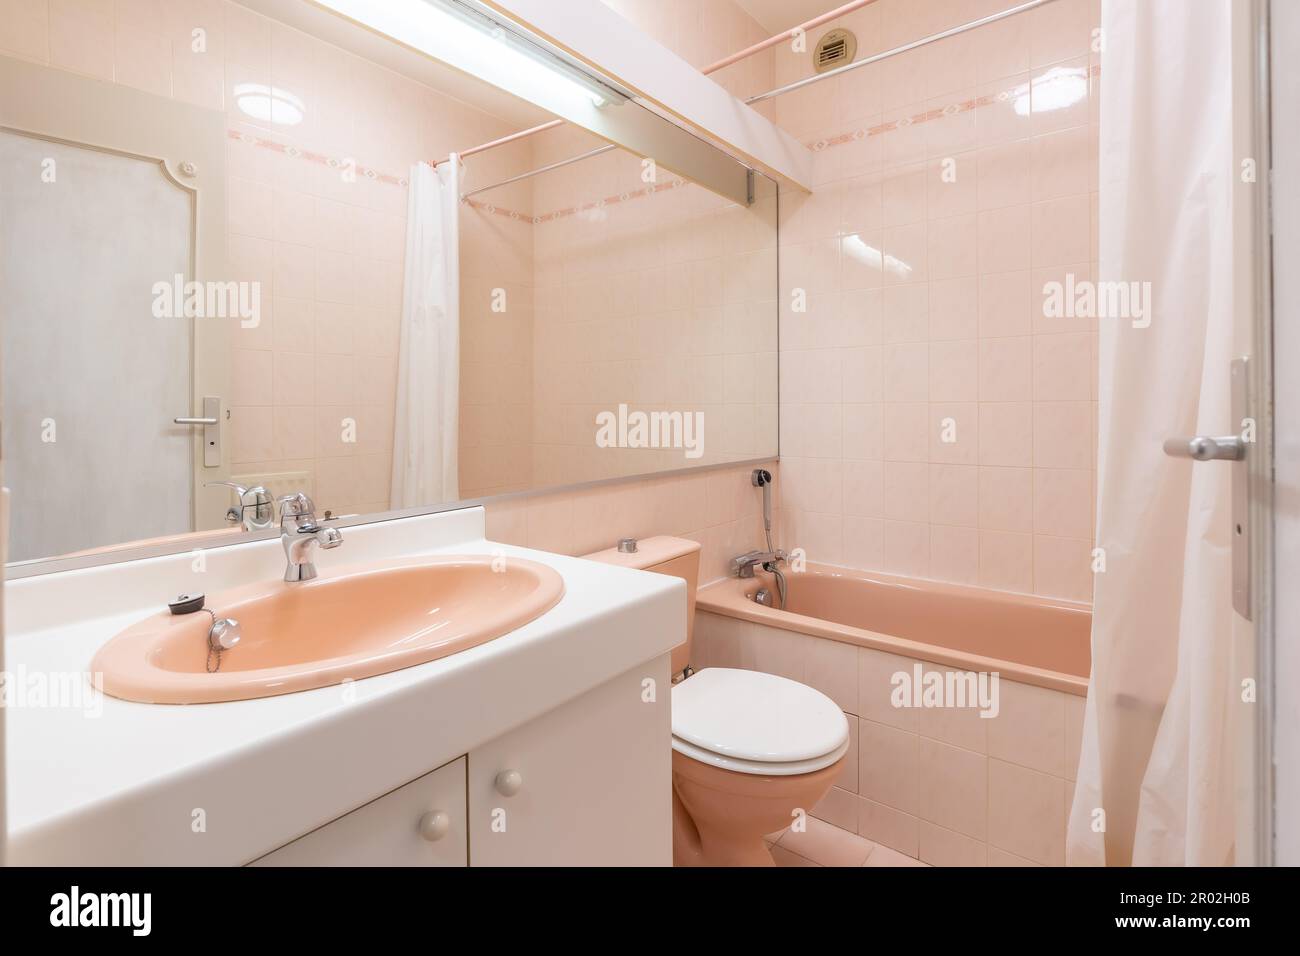 Badezimmer zu Hause, helle neue Badezimmereinrichtung mit gefliester  Glasdusche, Schrank, Inneneinrichtung in Weiß und Pink gestaltet  Stockfotografie - Alamy